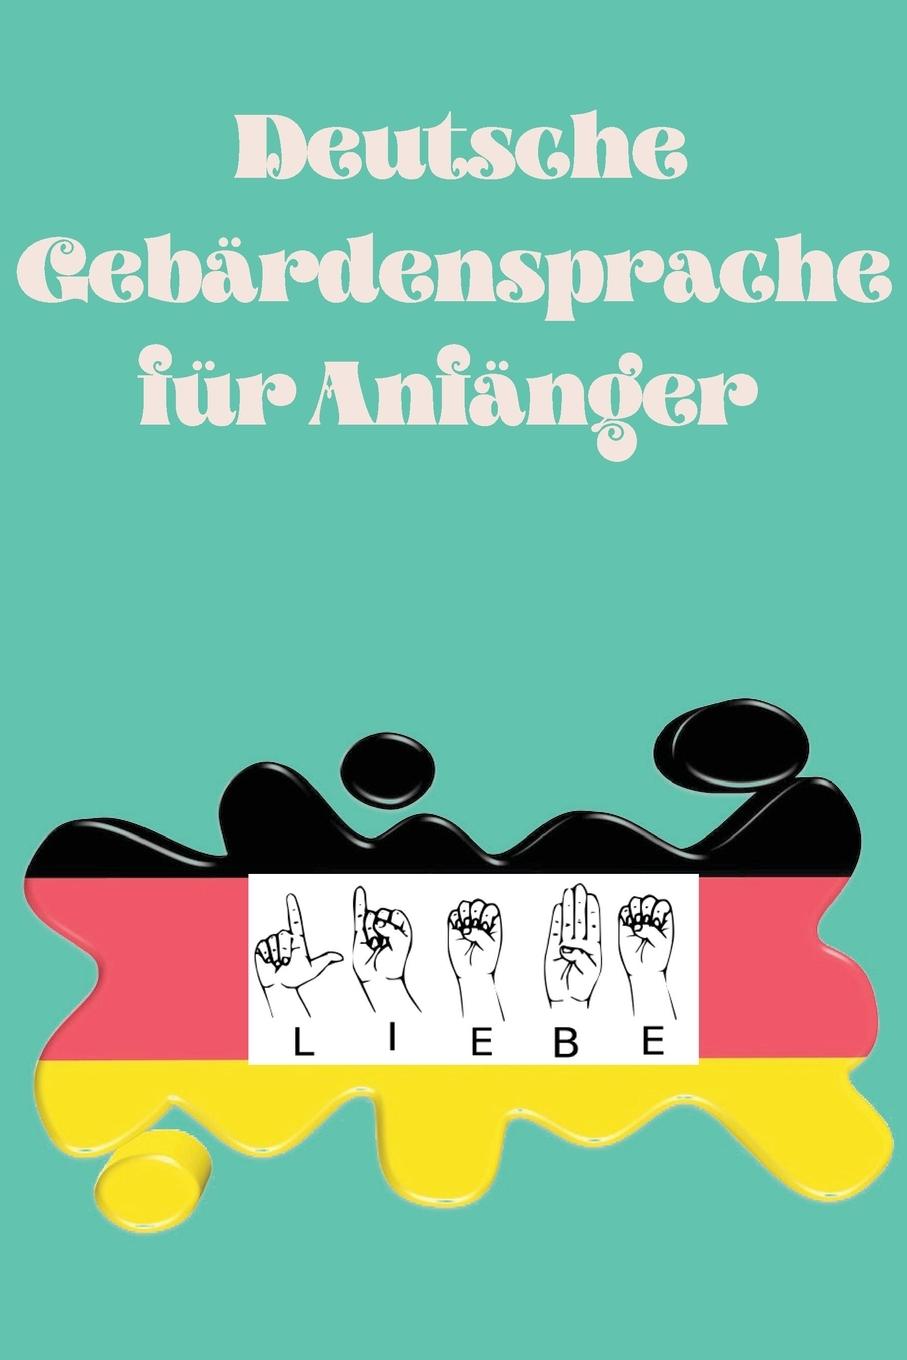 Könyv Deutsche Gebardensprache fur Anfanger.Lernbuch, geeignet fur Kinder, Jugendliche und Erwachsene. Enthalt das Alphabet. 